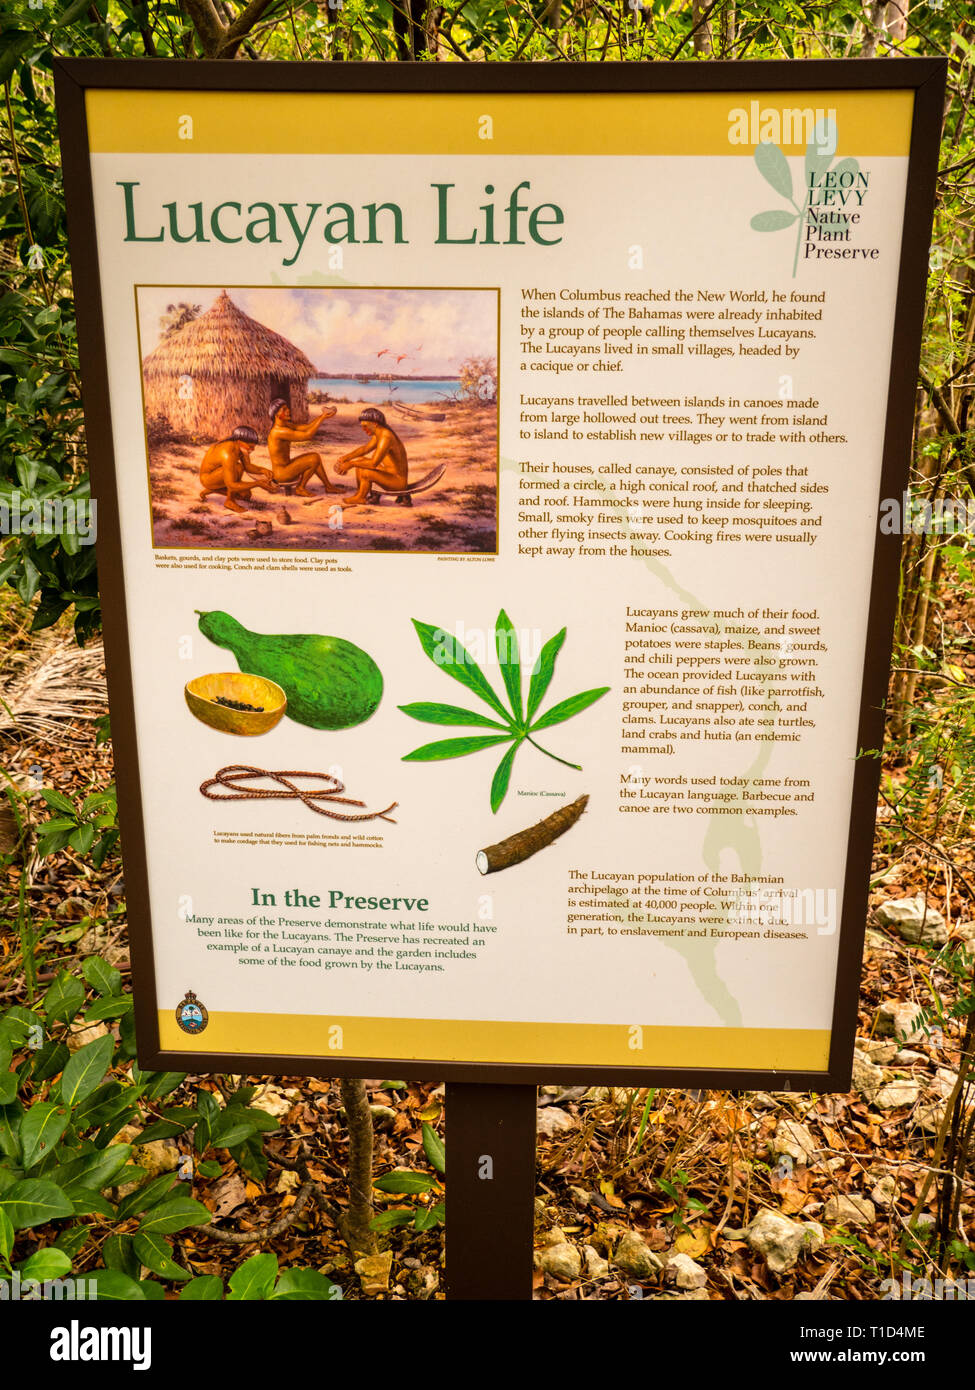 Firmar sobre extinto Pueblo Lucayan, aniquilados por los Españoles, León Levy planta nativa preservar, Eleuthera, las Bahamas, El Caribe. Foto de stock